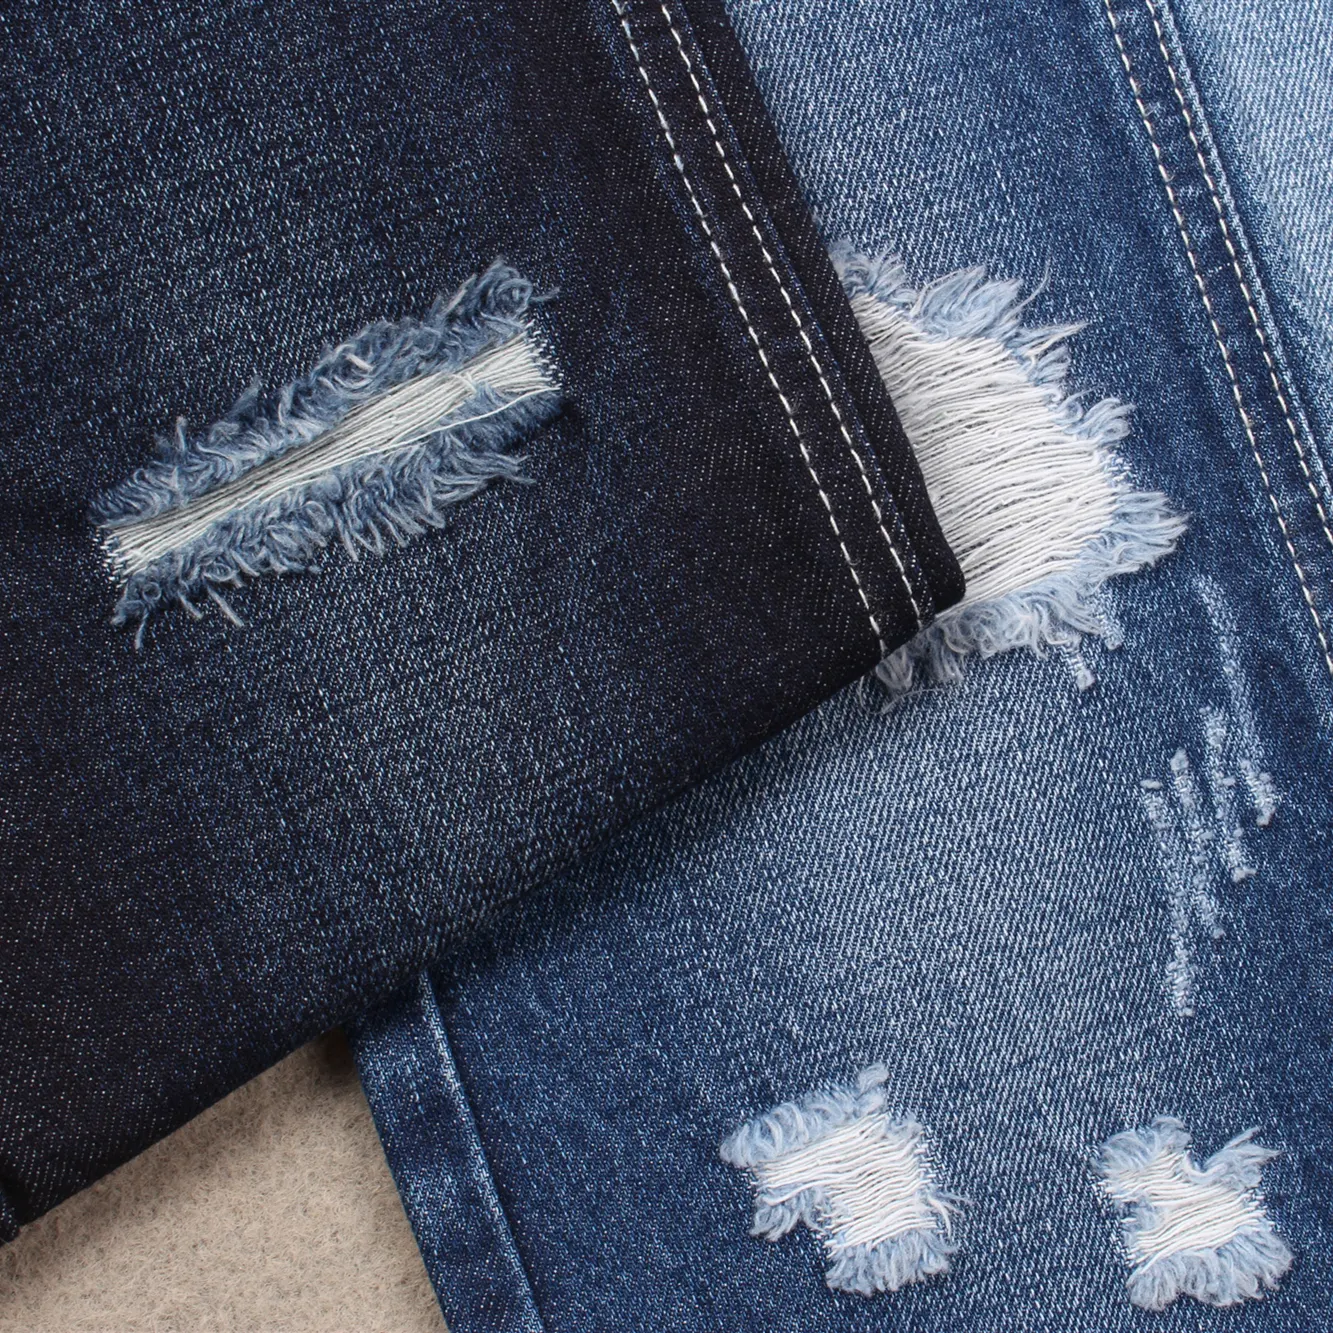 綿100% スパンデックスなし優れた洗濯効果と競争力のある価格良い素材デニム生地広州のジーンズ工場用